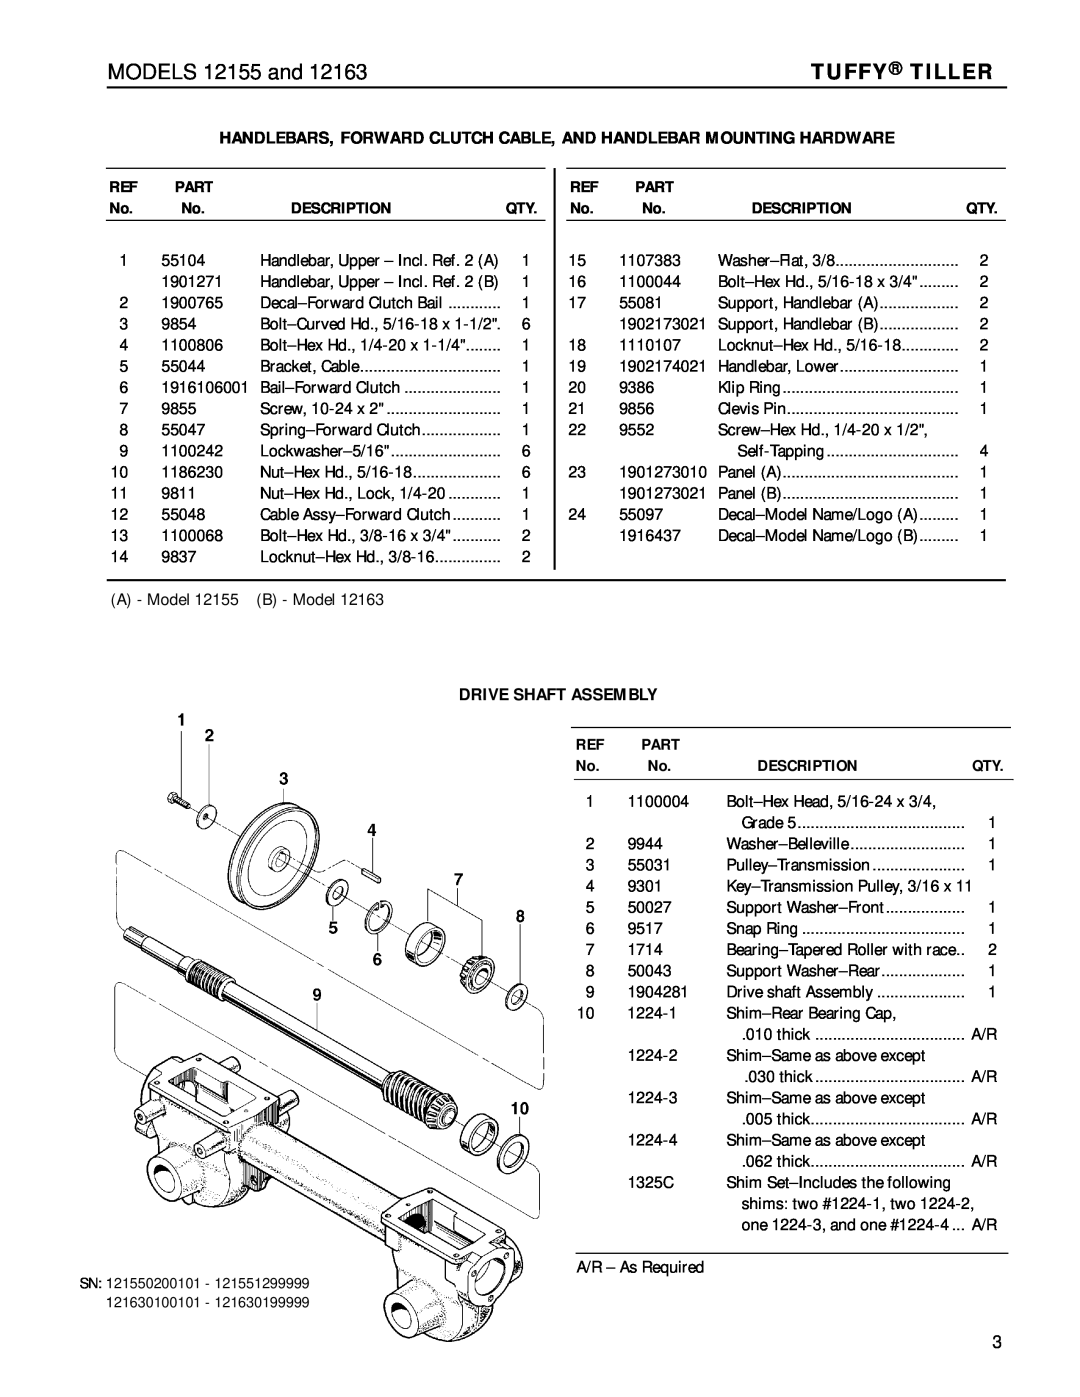 Troy-Bilt 12163 manual Drive Shaft Assembly, Part, Description, MODELS 12155 and, Tuffy Tiller 